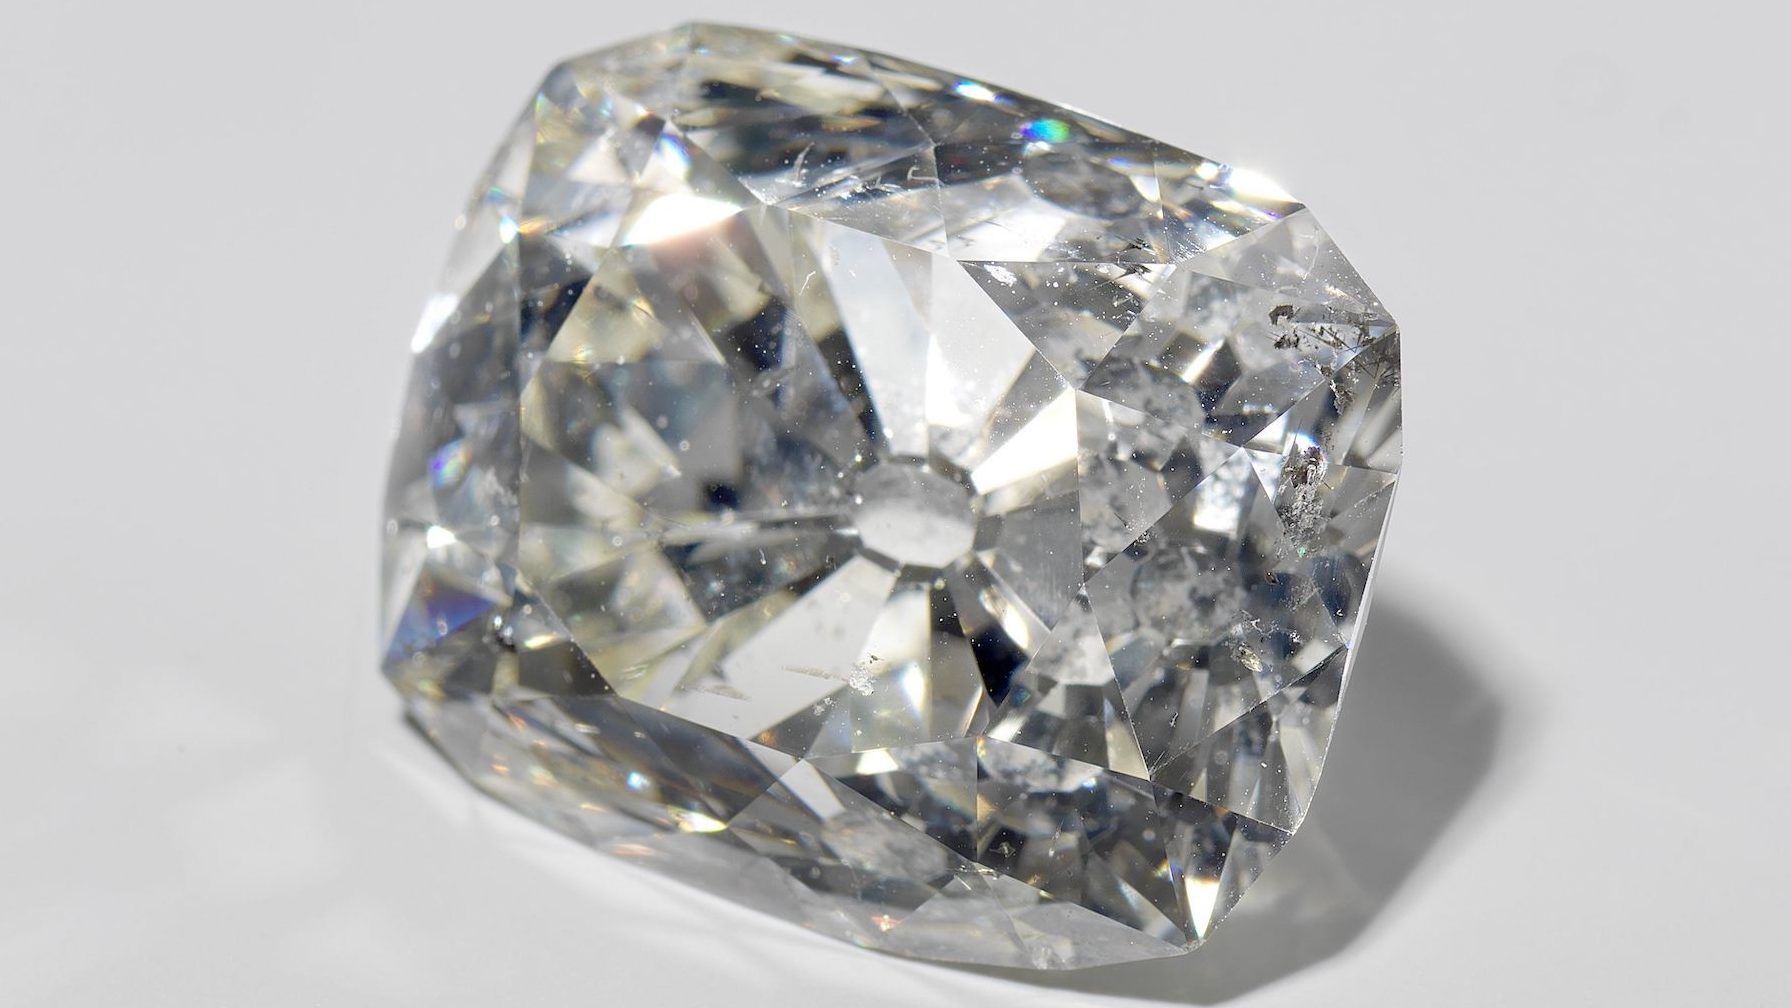 Banjarmasin Diamond. 36 carats.